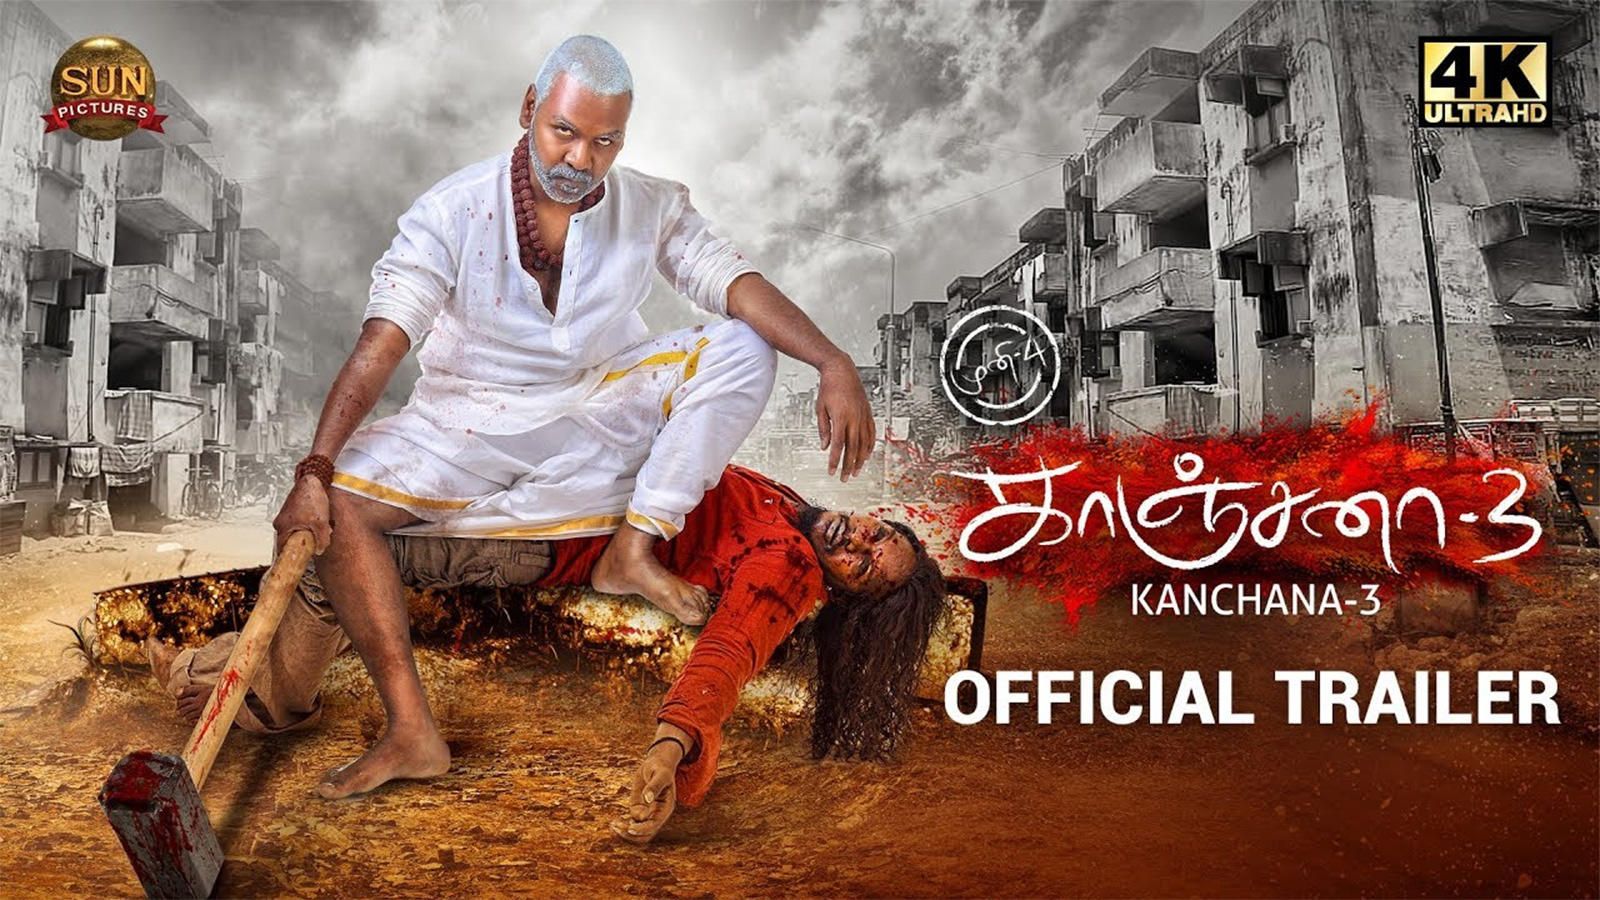 Kanchana 3. Tamil Movie News of India